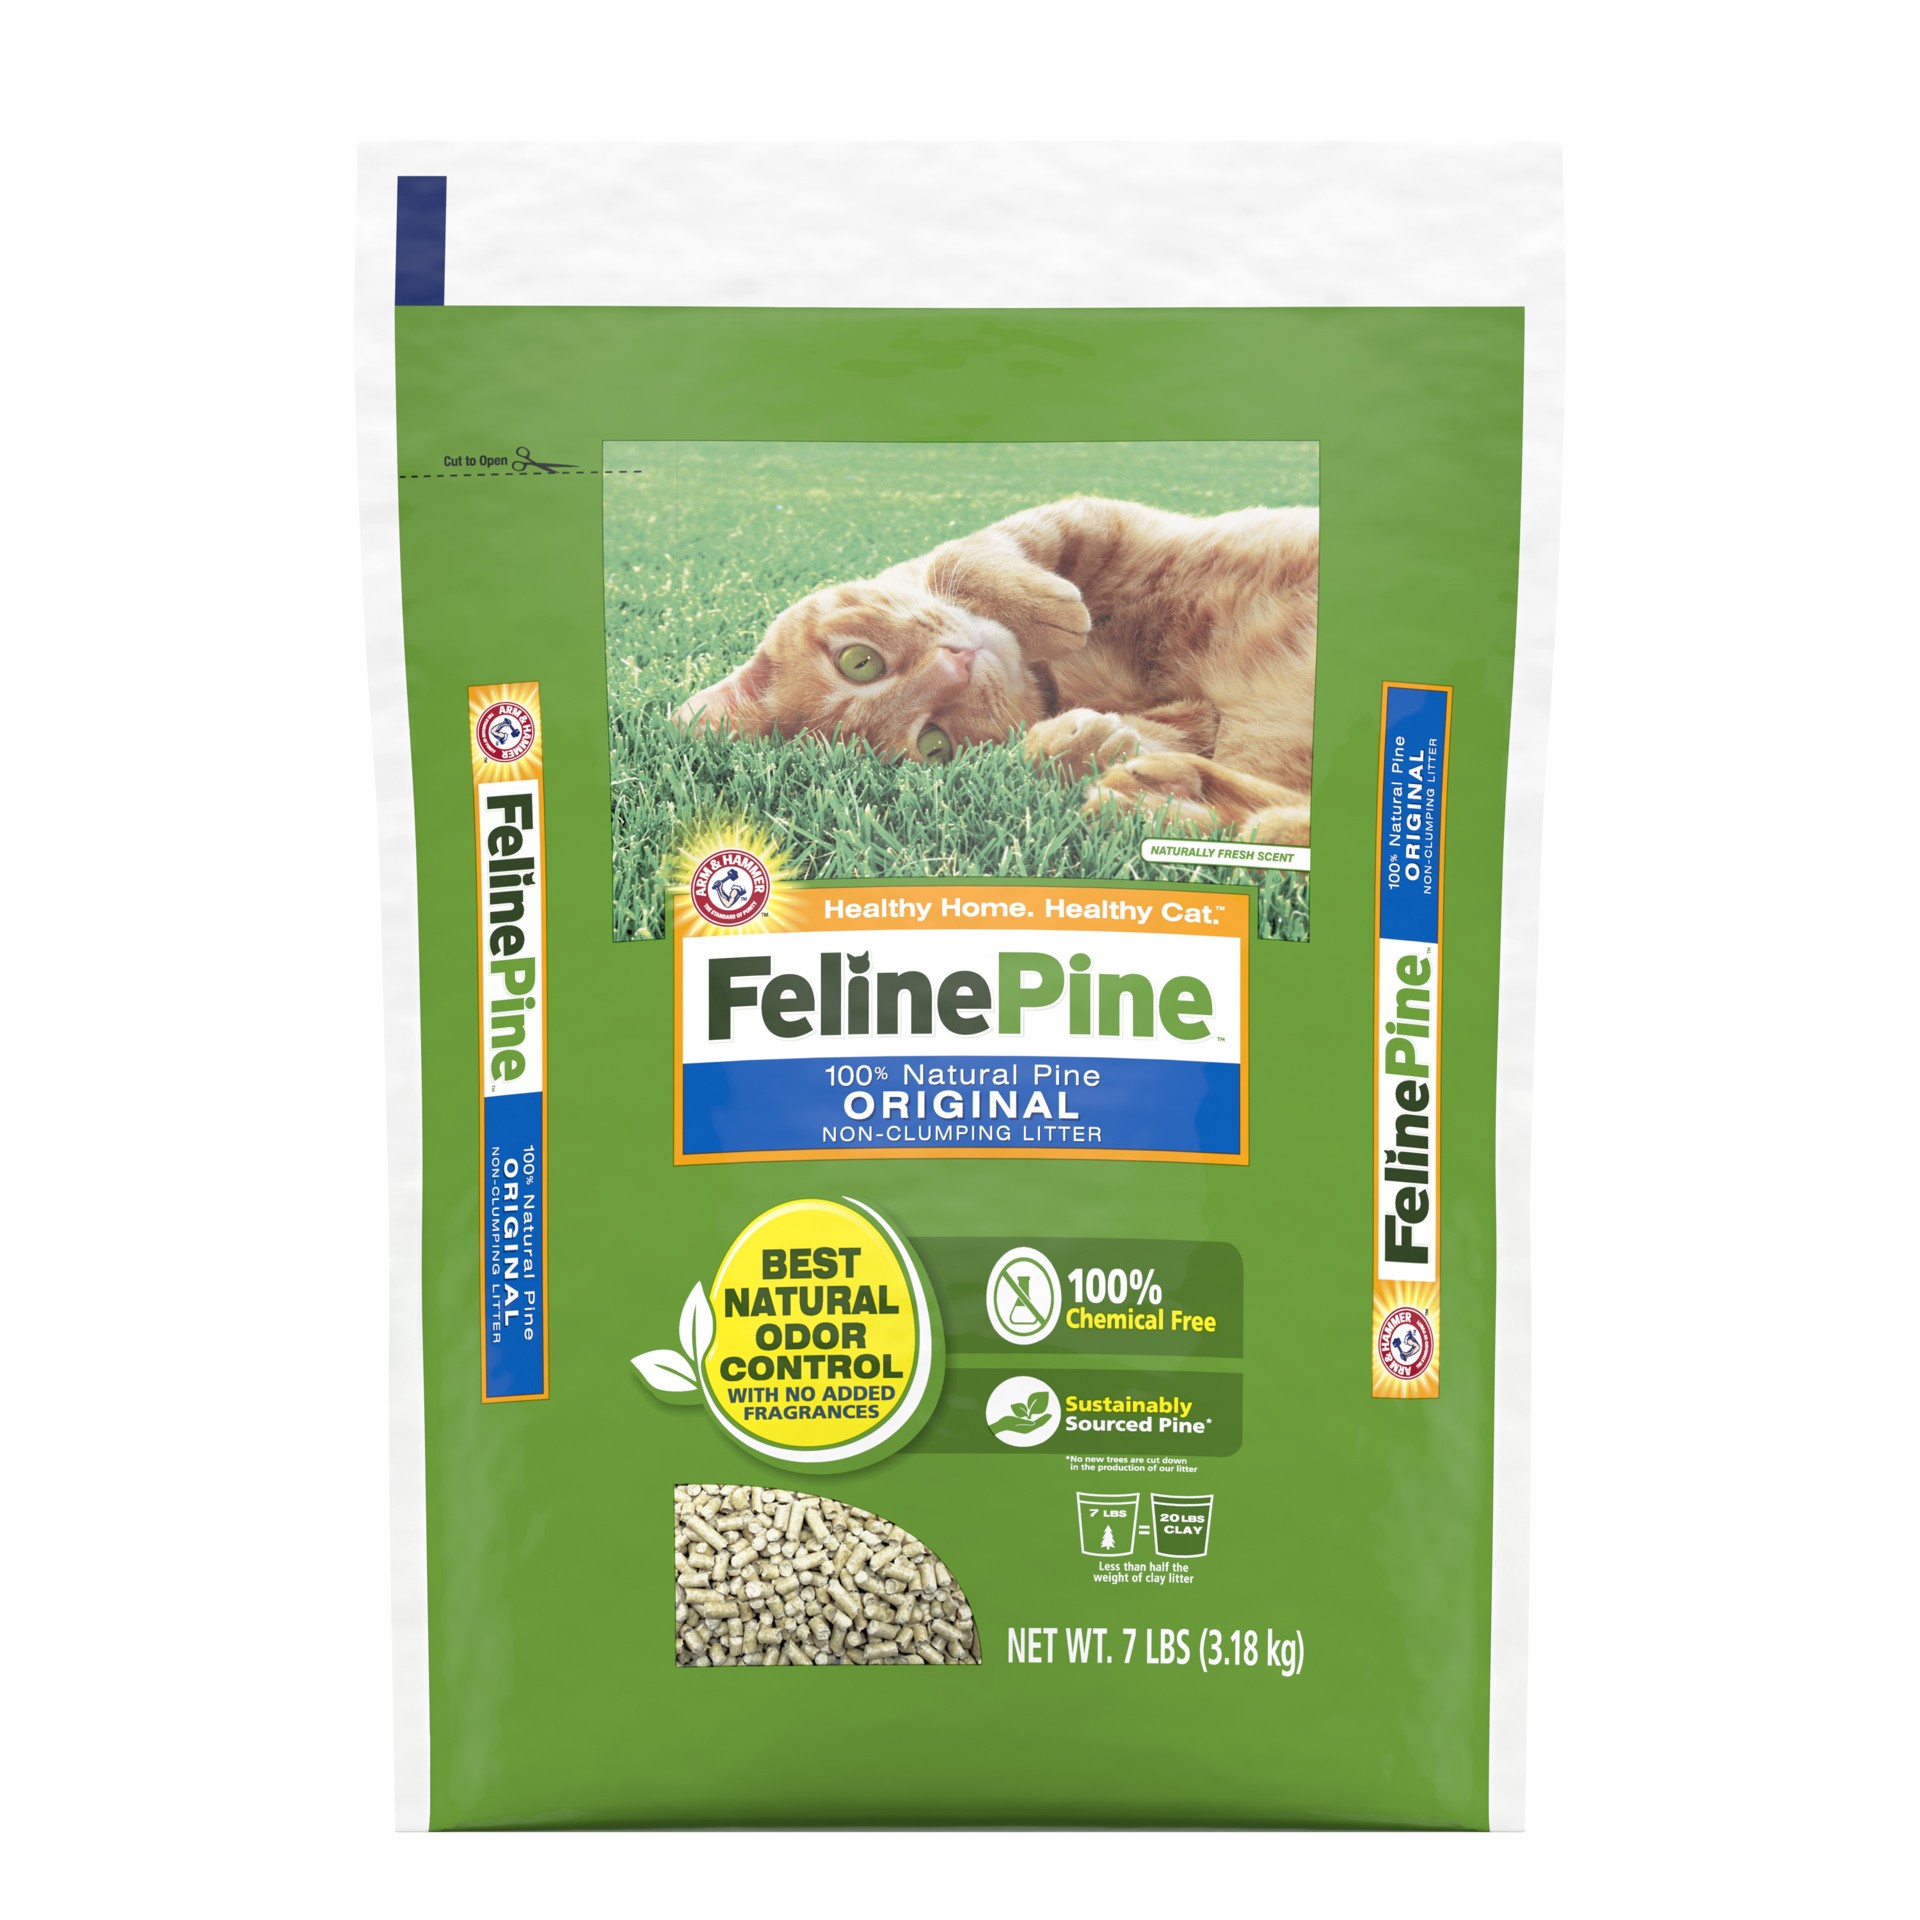 slide 1 of 5, Feline Pine Arm & Hammer Feline Pine 100% Natural Pine Original Non-Clumping Litter, 7 lb, 7 lb